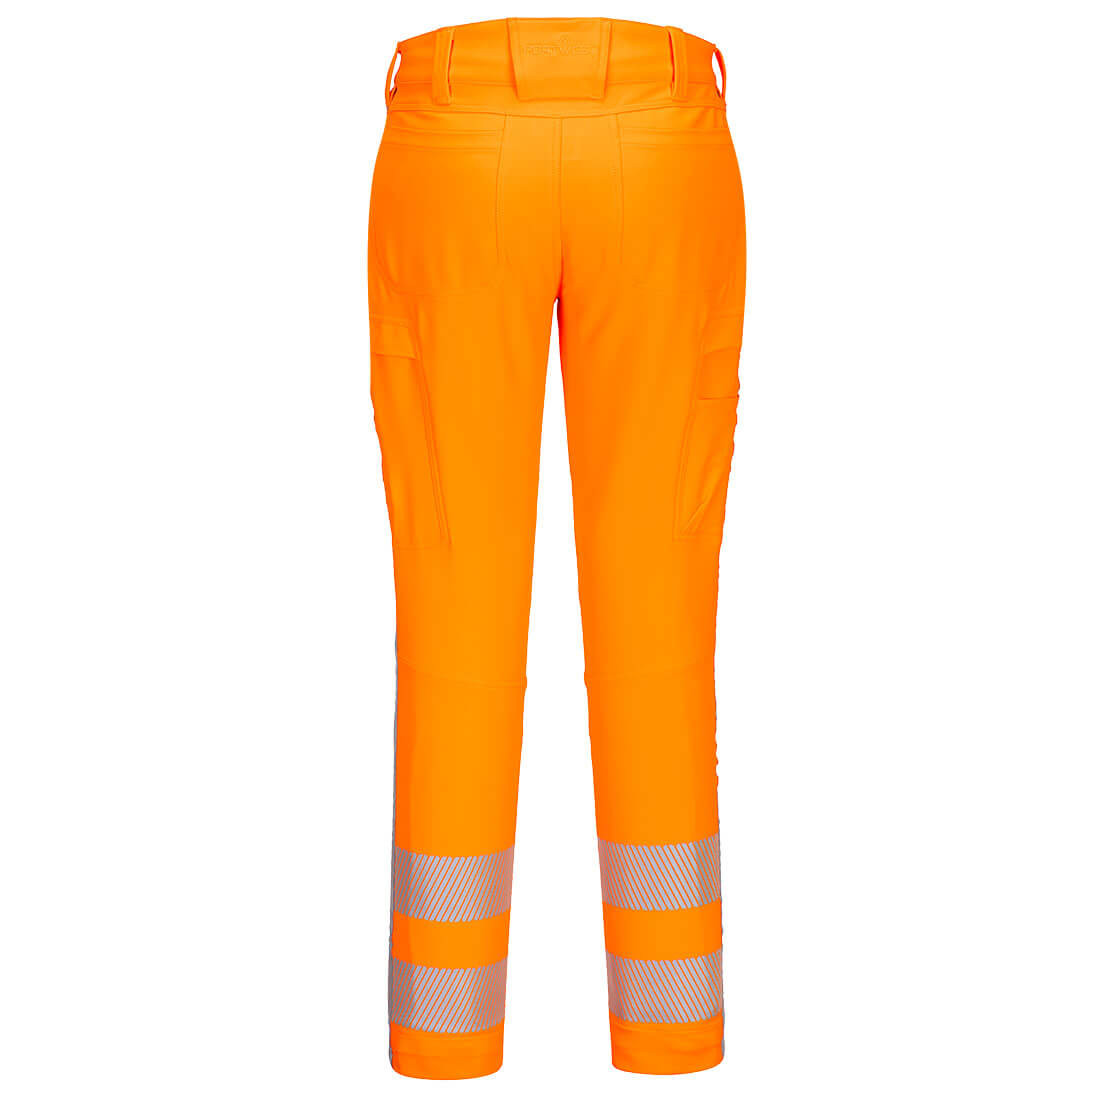 Pantalon de travail élastique RWS HiVis - Les vêtements de protection